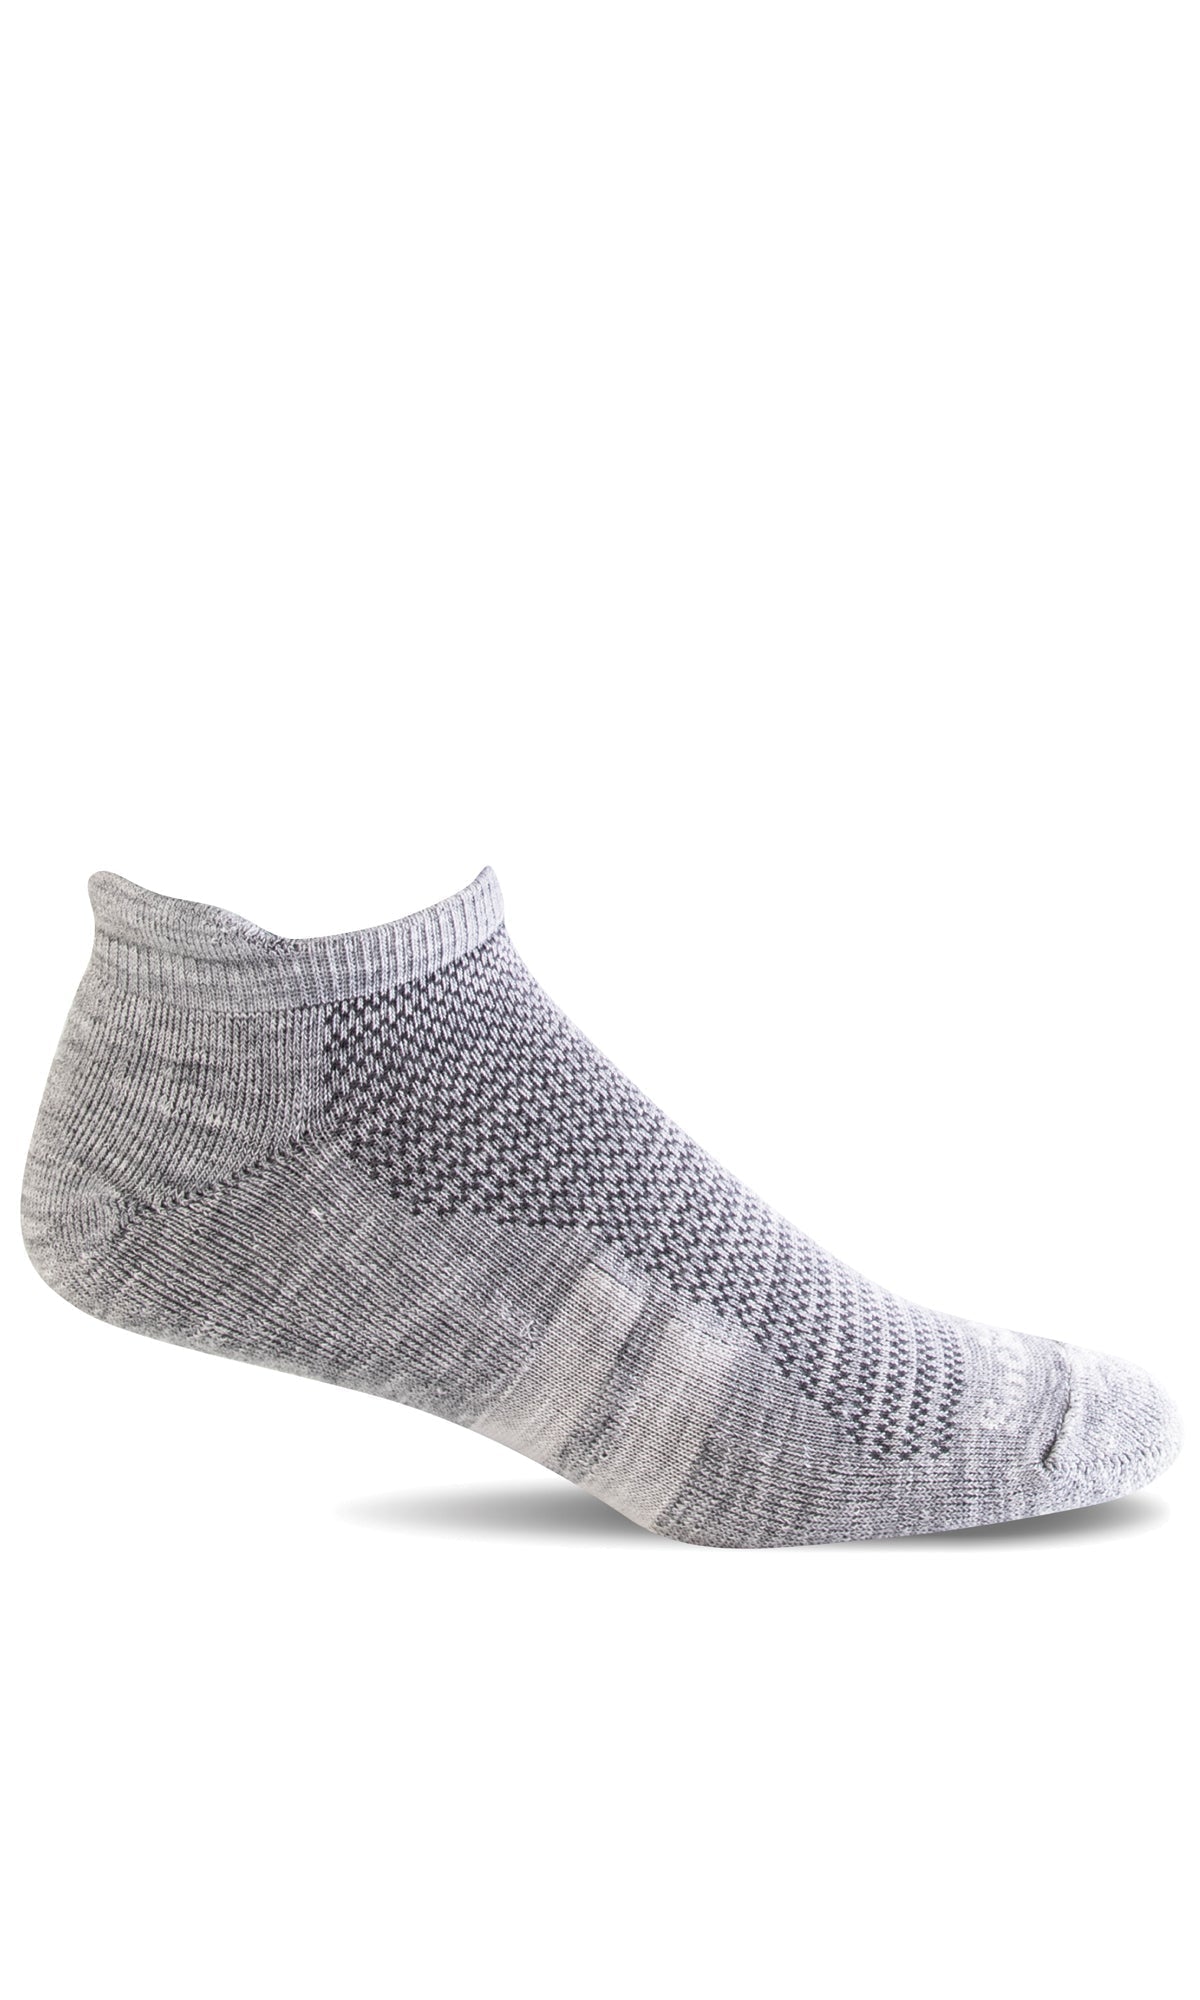 Men's Commuter | Essential Comfort Socks - Merino Wool Essential Comfort - Sockwell